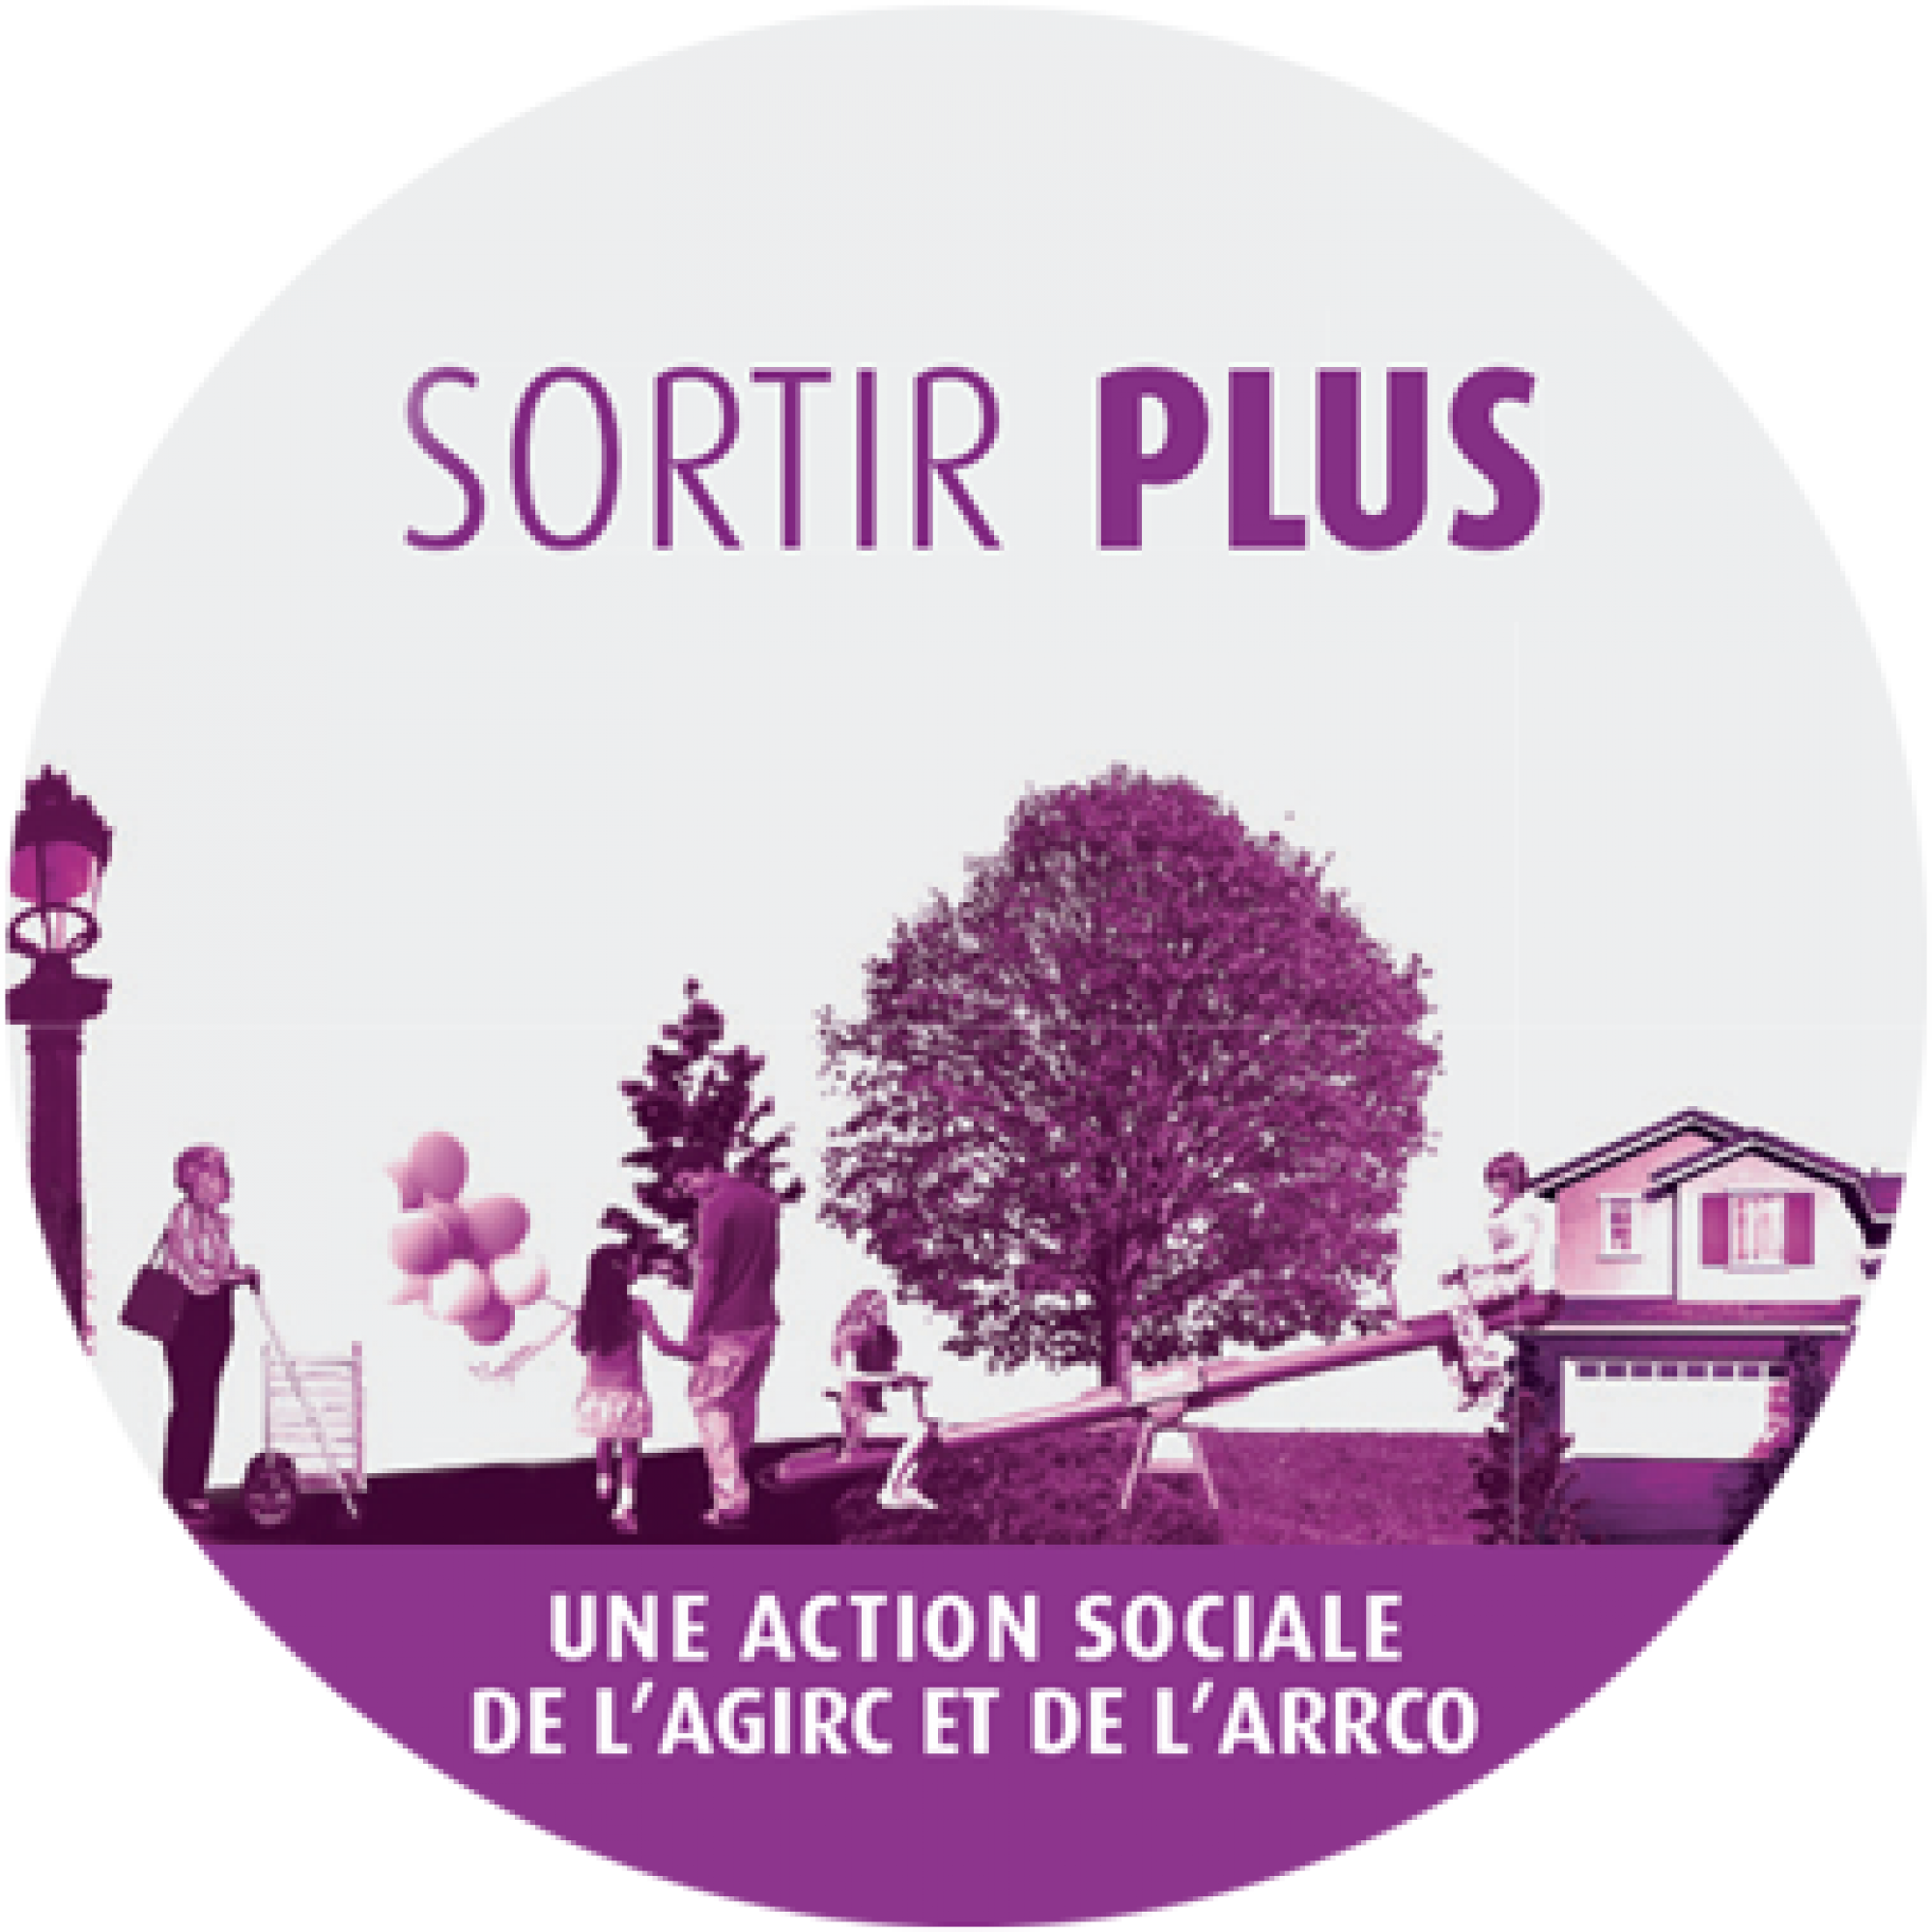 Action social et solidaire